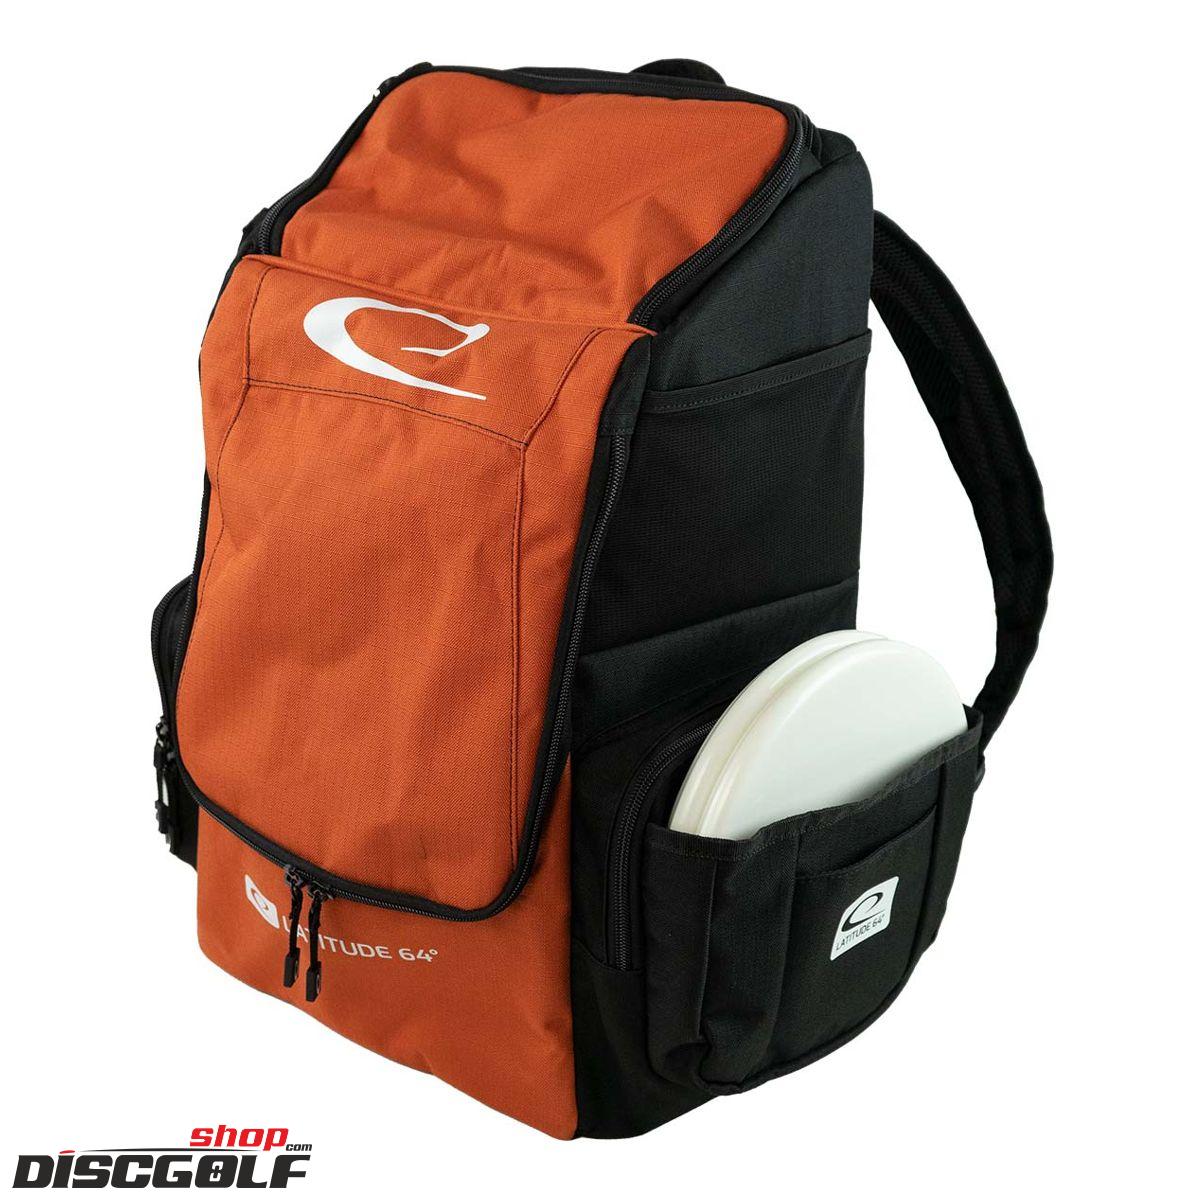 Latitude 64º Core Pro E2 Backpack - Černo-oranžová/Black-Blaze-orange